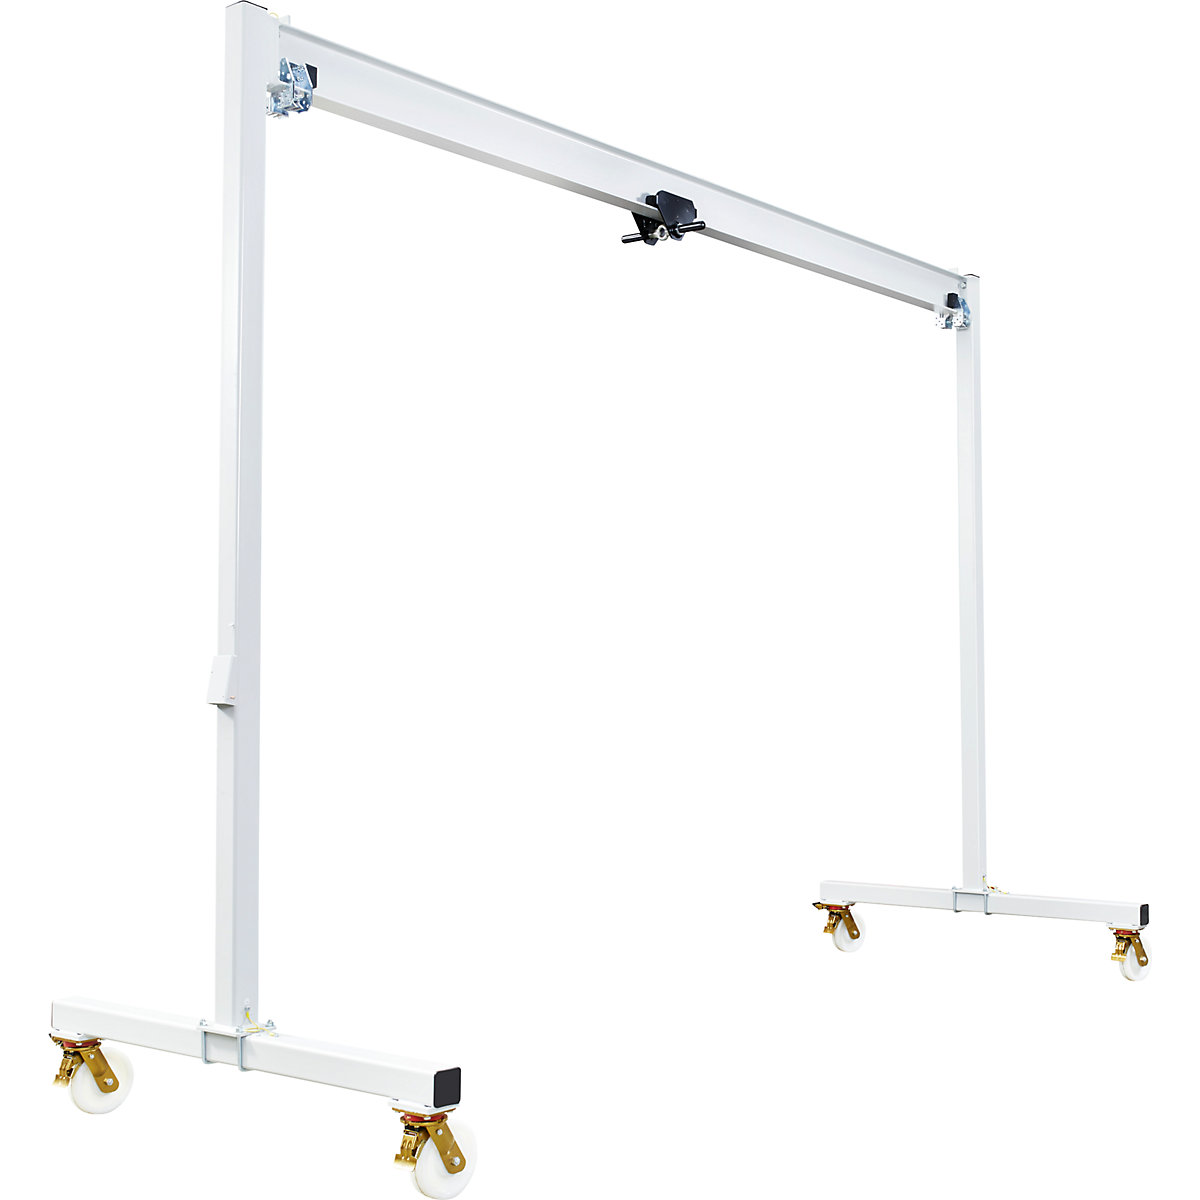 Steel mobile gantry crane PA – Vetter